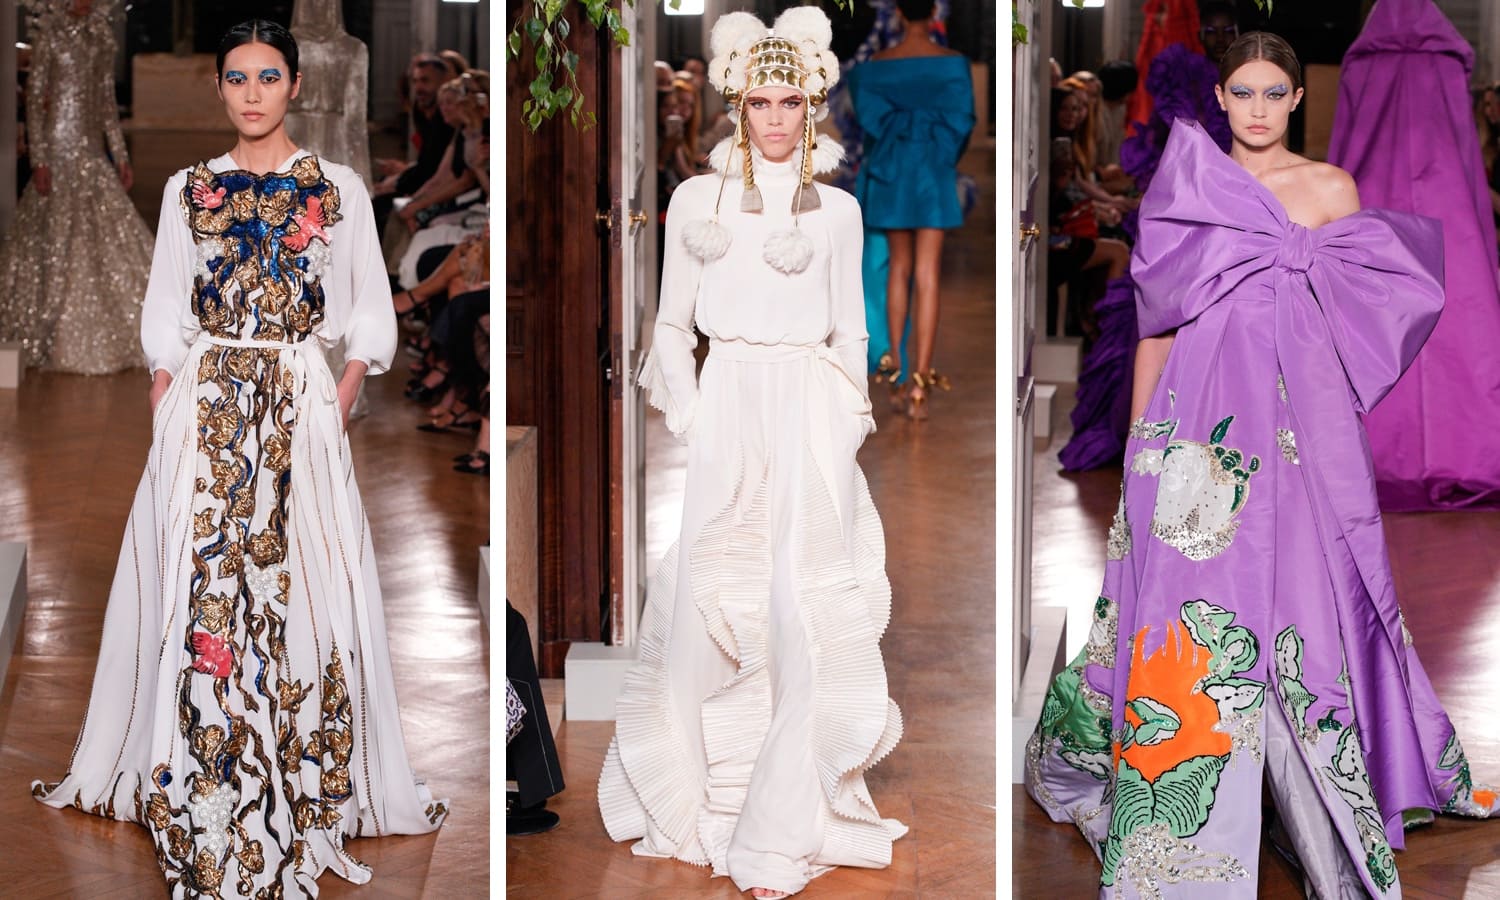 Фото с показа коллекции Пьерпаоло Пиччоли на Неделе высокой моды в париже 2019